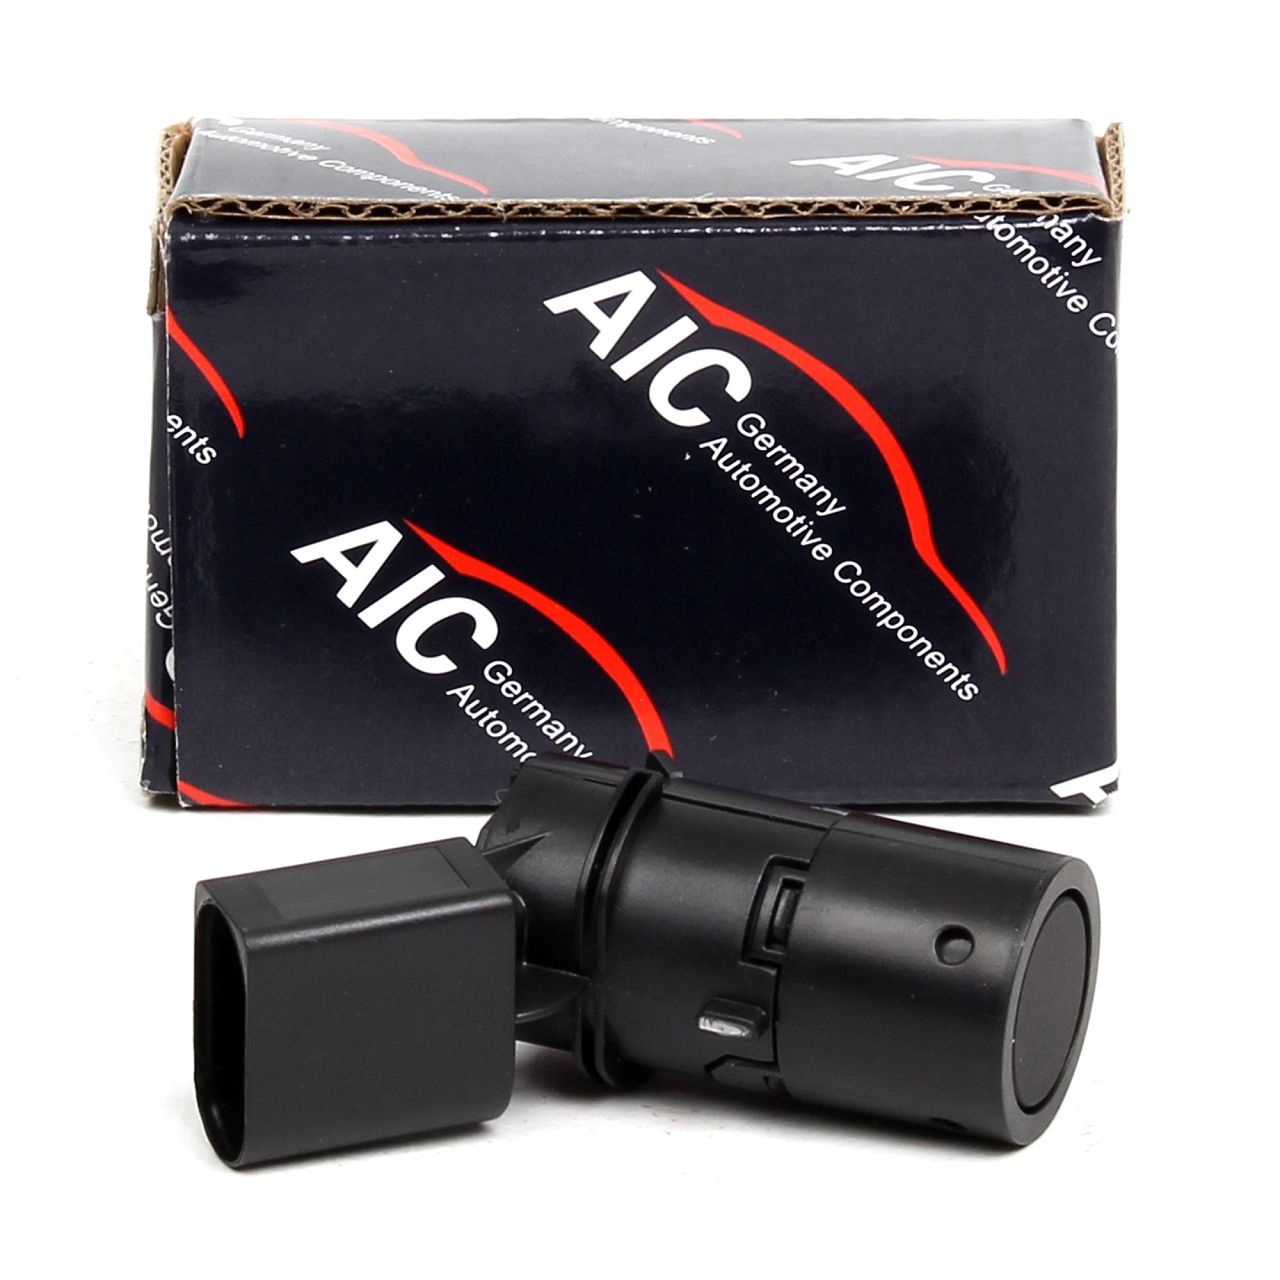 AIC Einparksensor Parksensor Abstandssensor PDC für AUDI A3 (8P) A4 (B7) A6 (C5)